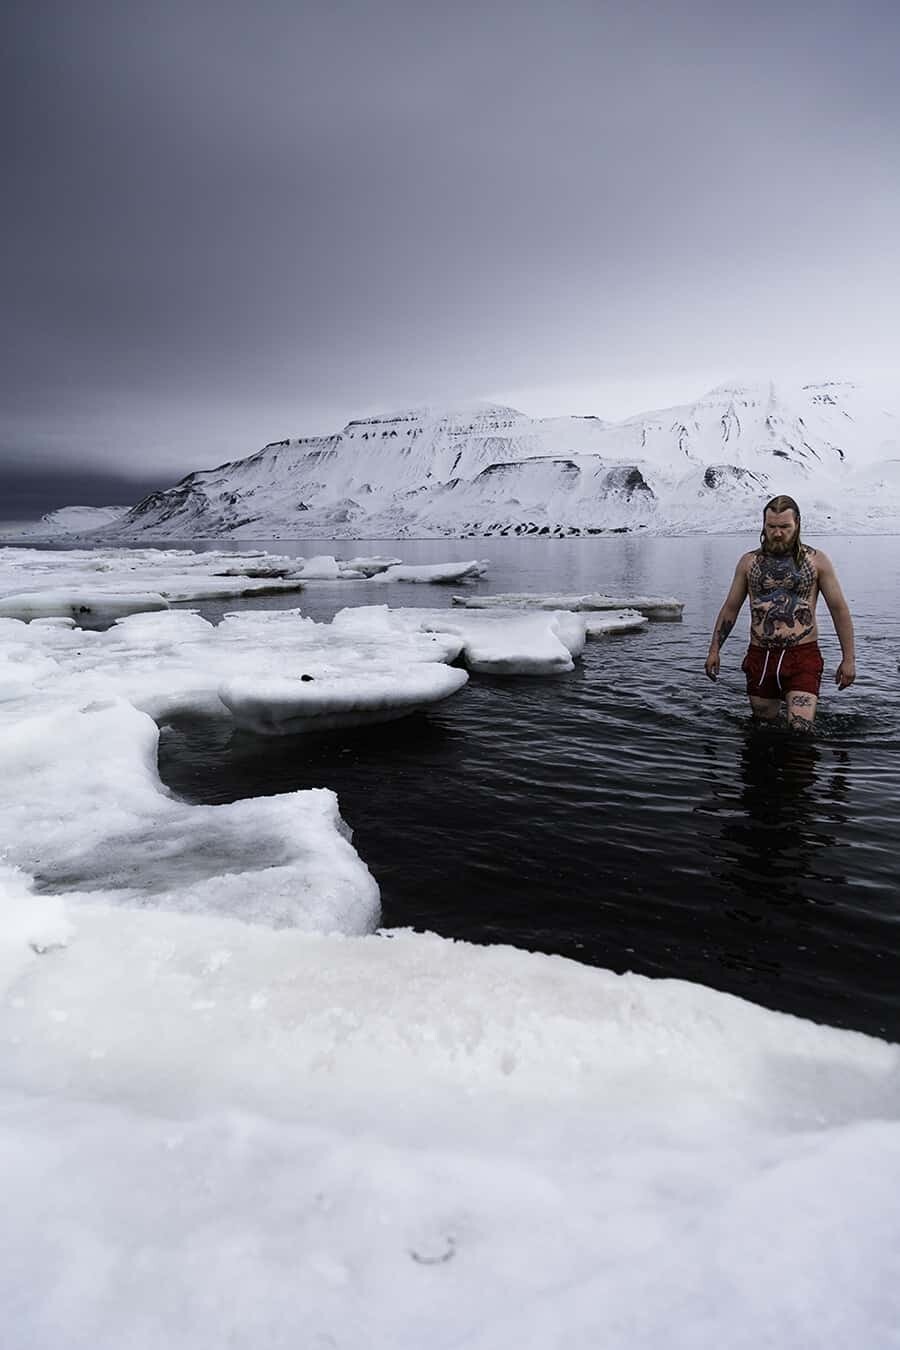 Lofoten Islands Photographer Neil Bloem interview